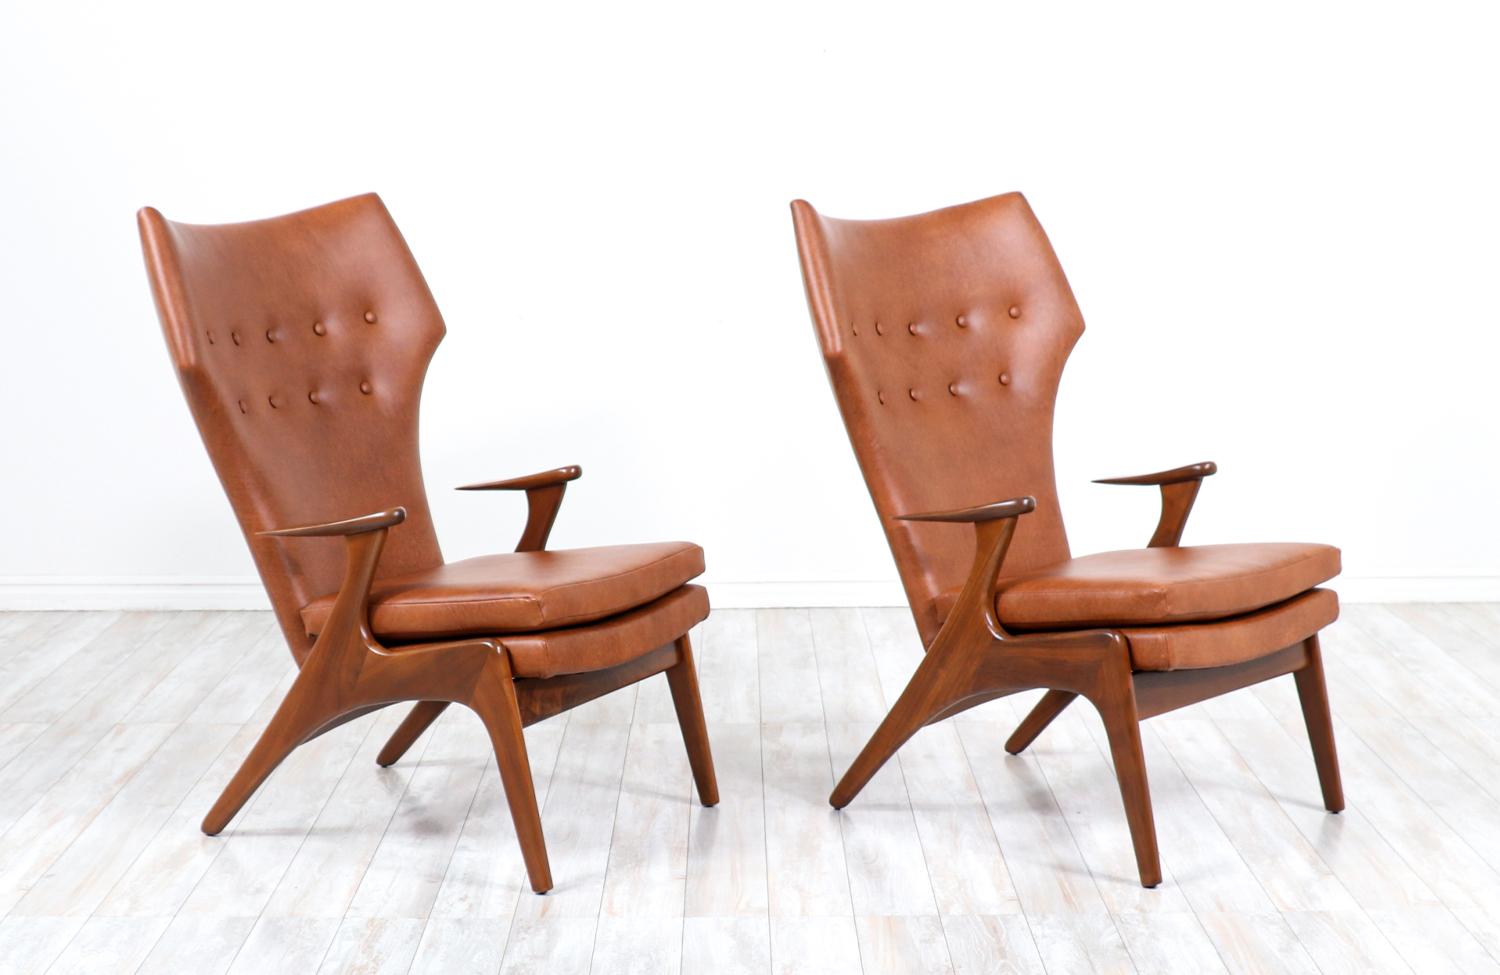 Paire d'élégants fauteuils modernes à haut dossier en forme d'aile, conçus par Kurt Østervig pour Rolschau Møbler au Danemark vers les années 1950. Ces magnifiques chaises sont dotées d'un cadre en bois de noyer massif et d'accoudoirs incurvés en